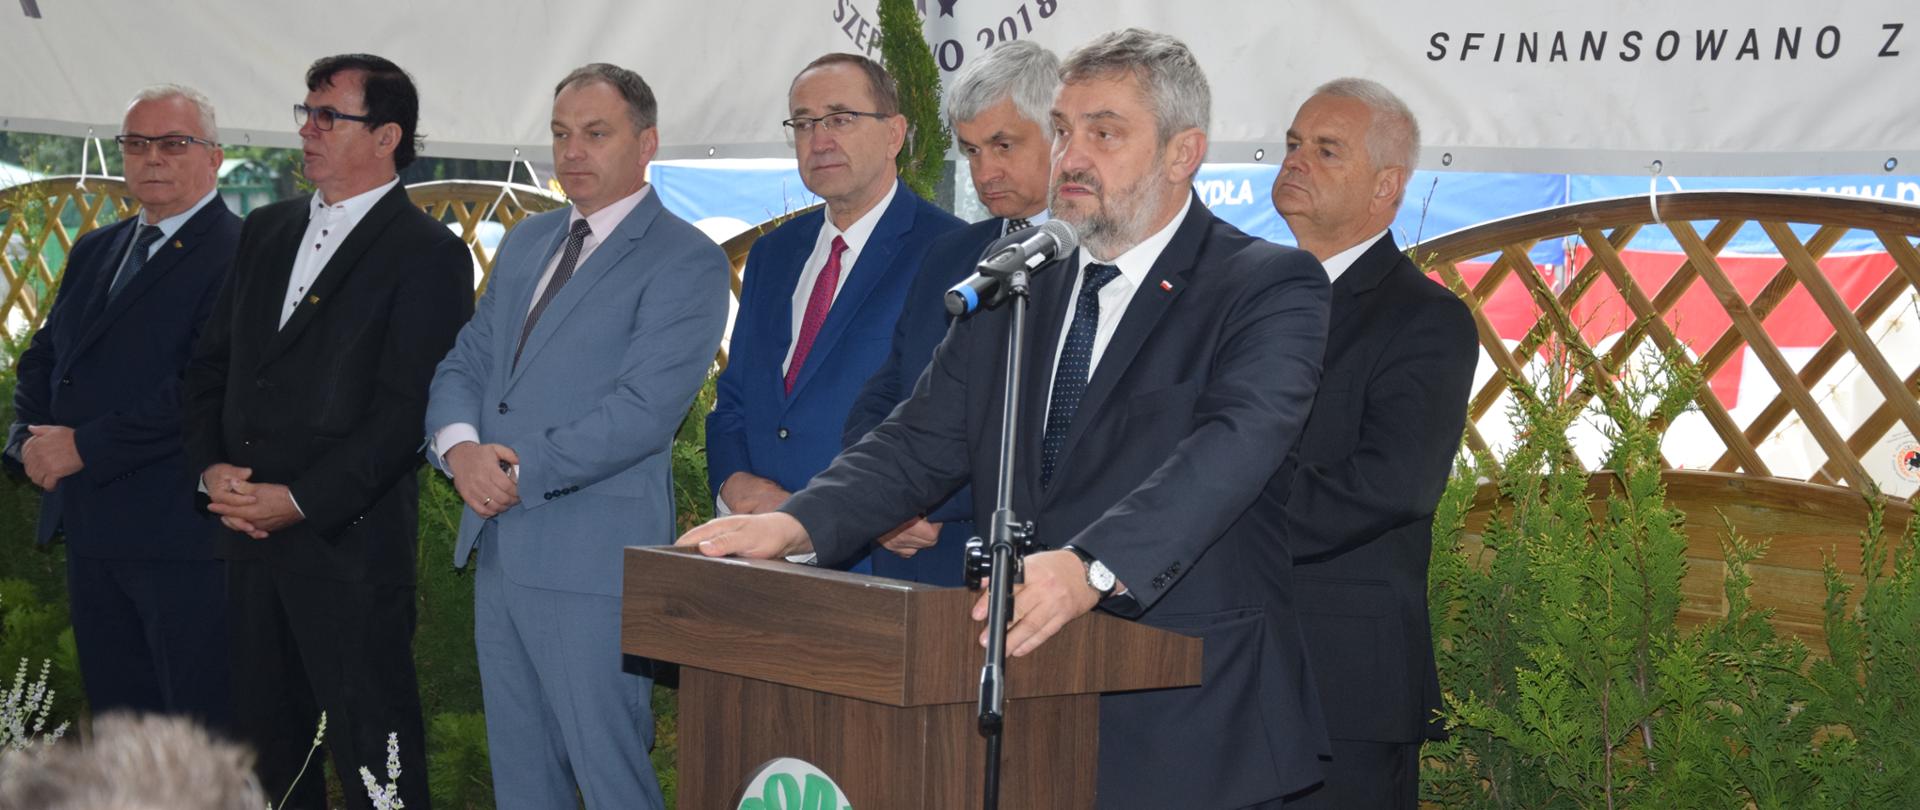 Minister Ardanowski przedstawia priorytety, które chciałby zrealizować jako Minister Rolnictwa